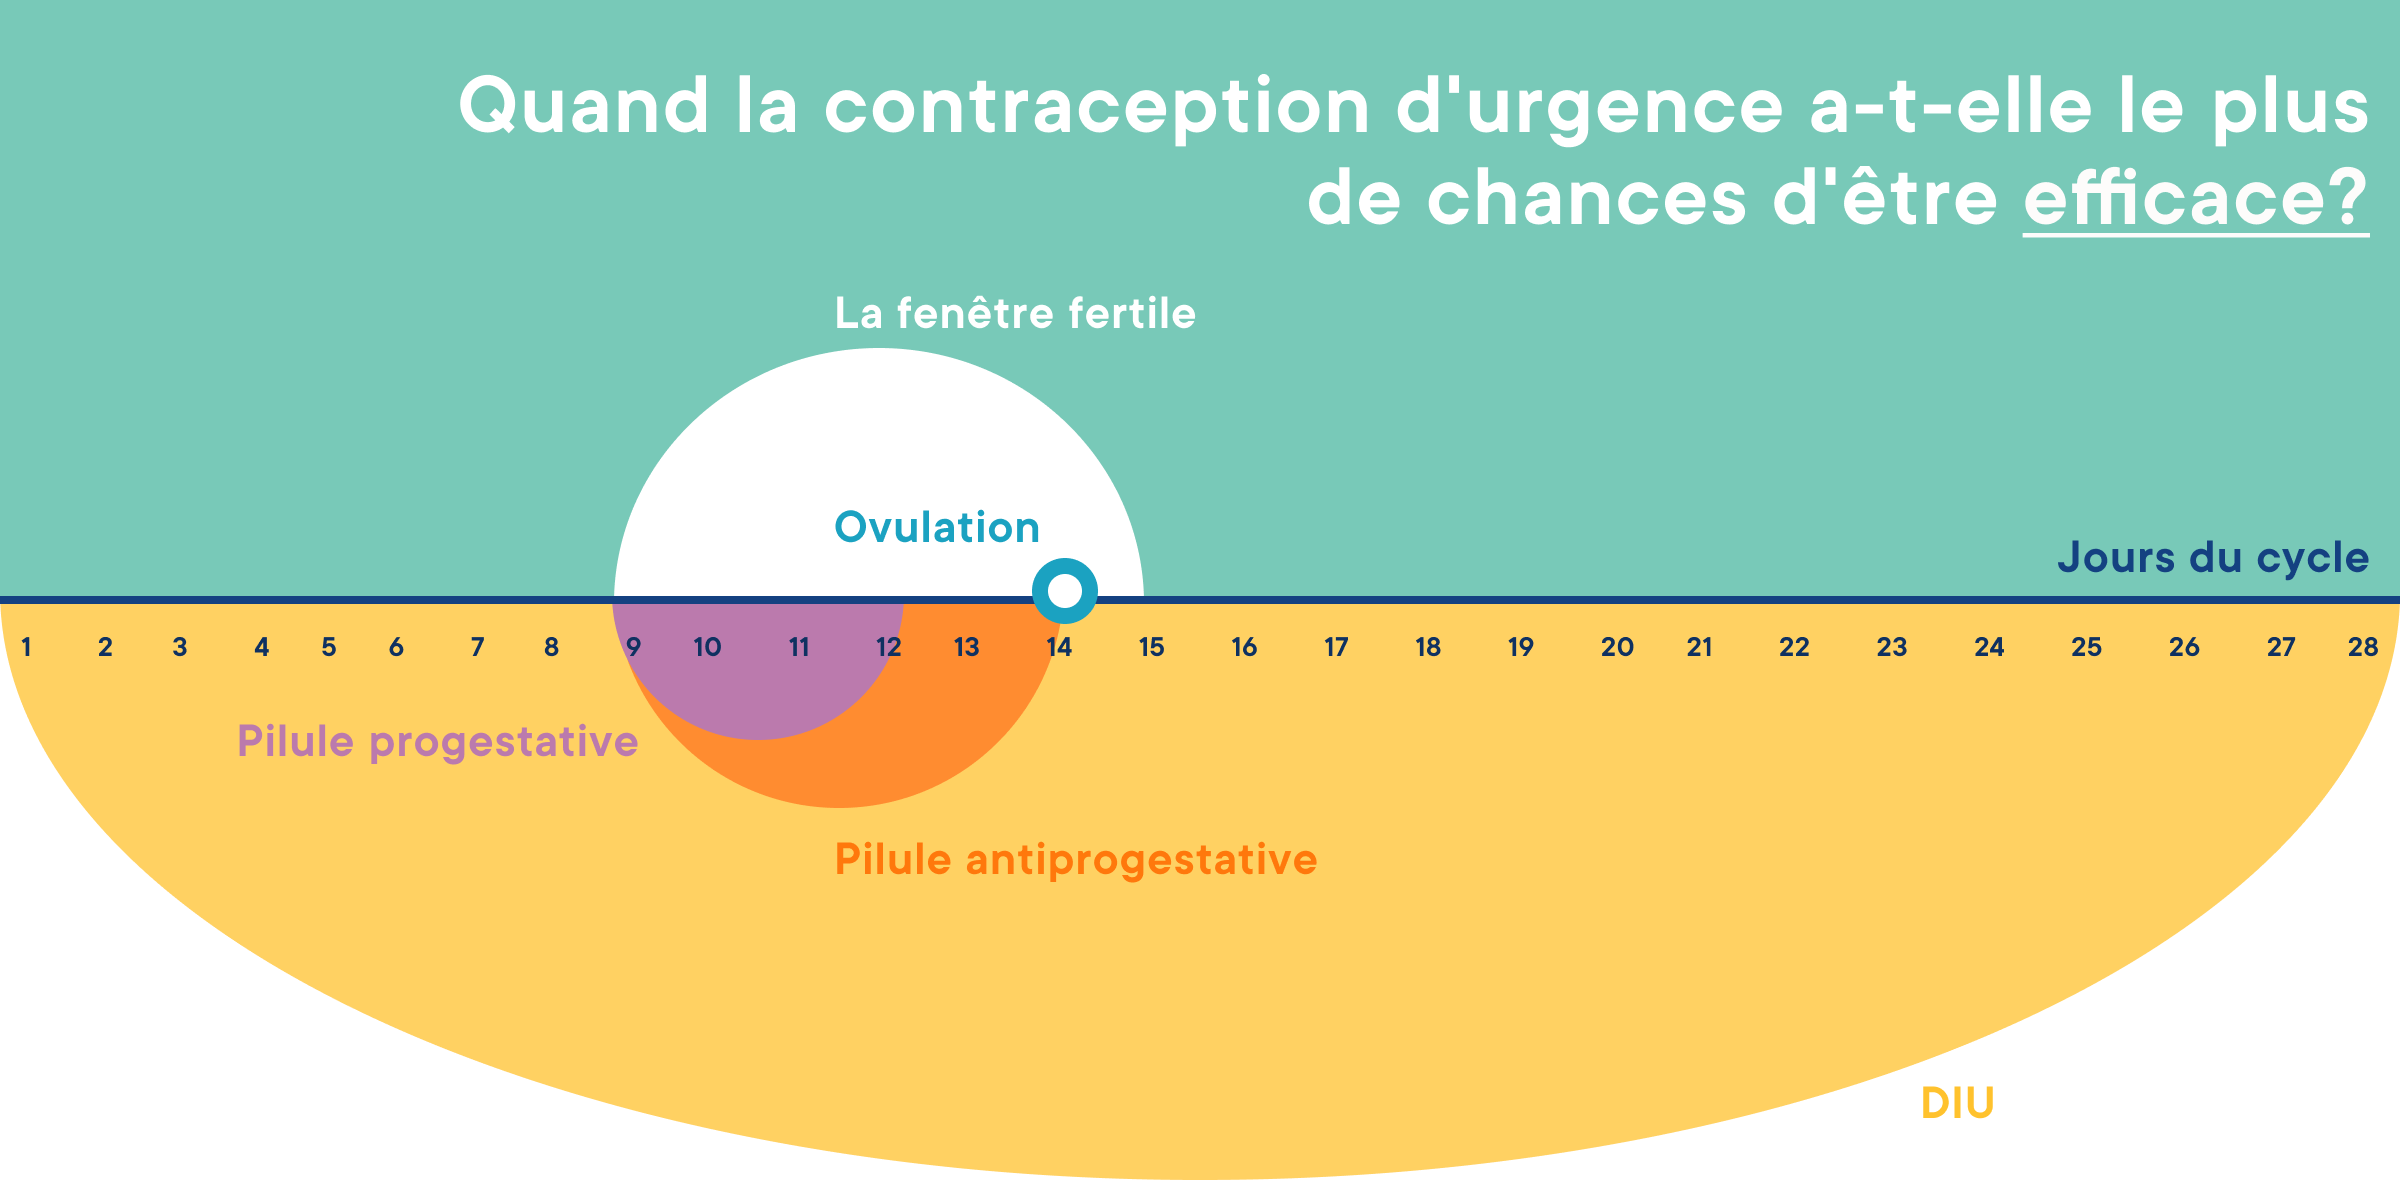 Contraception d'urgence : quand est-elle la plus efficace ?